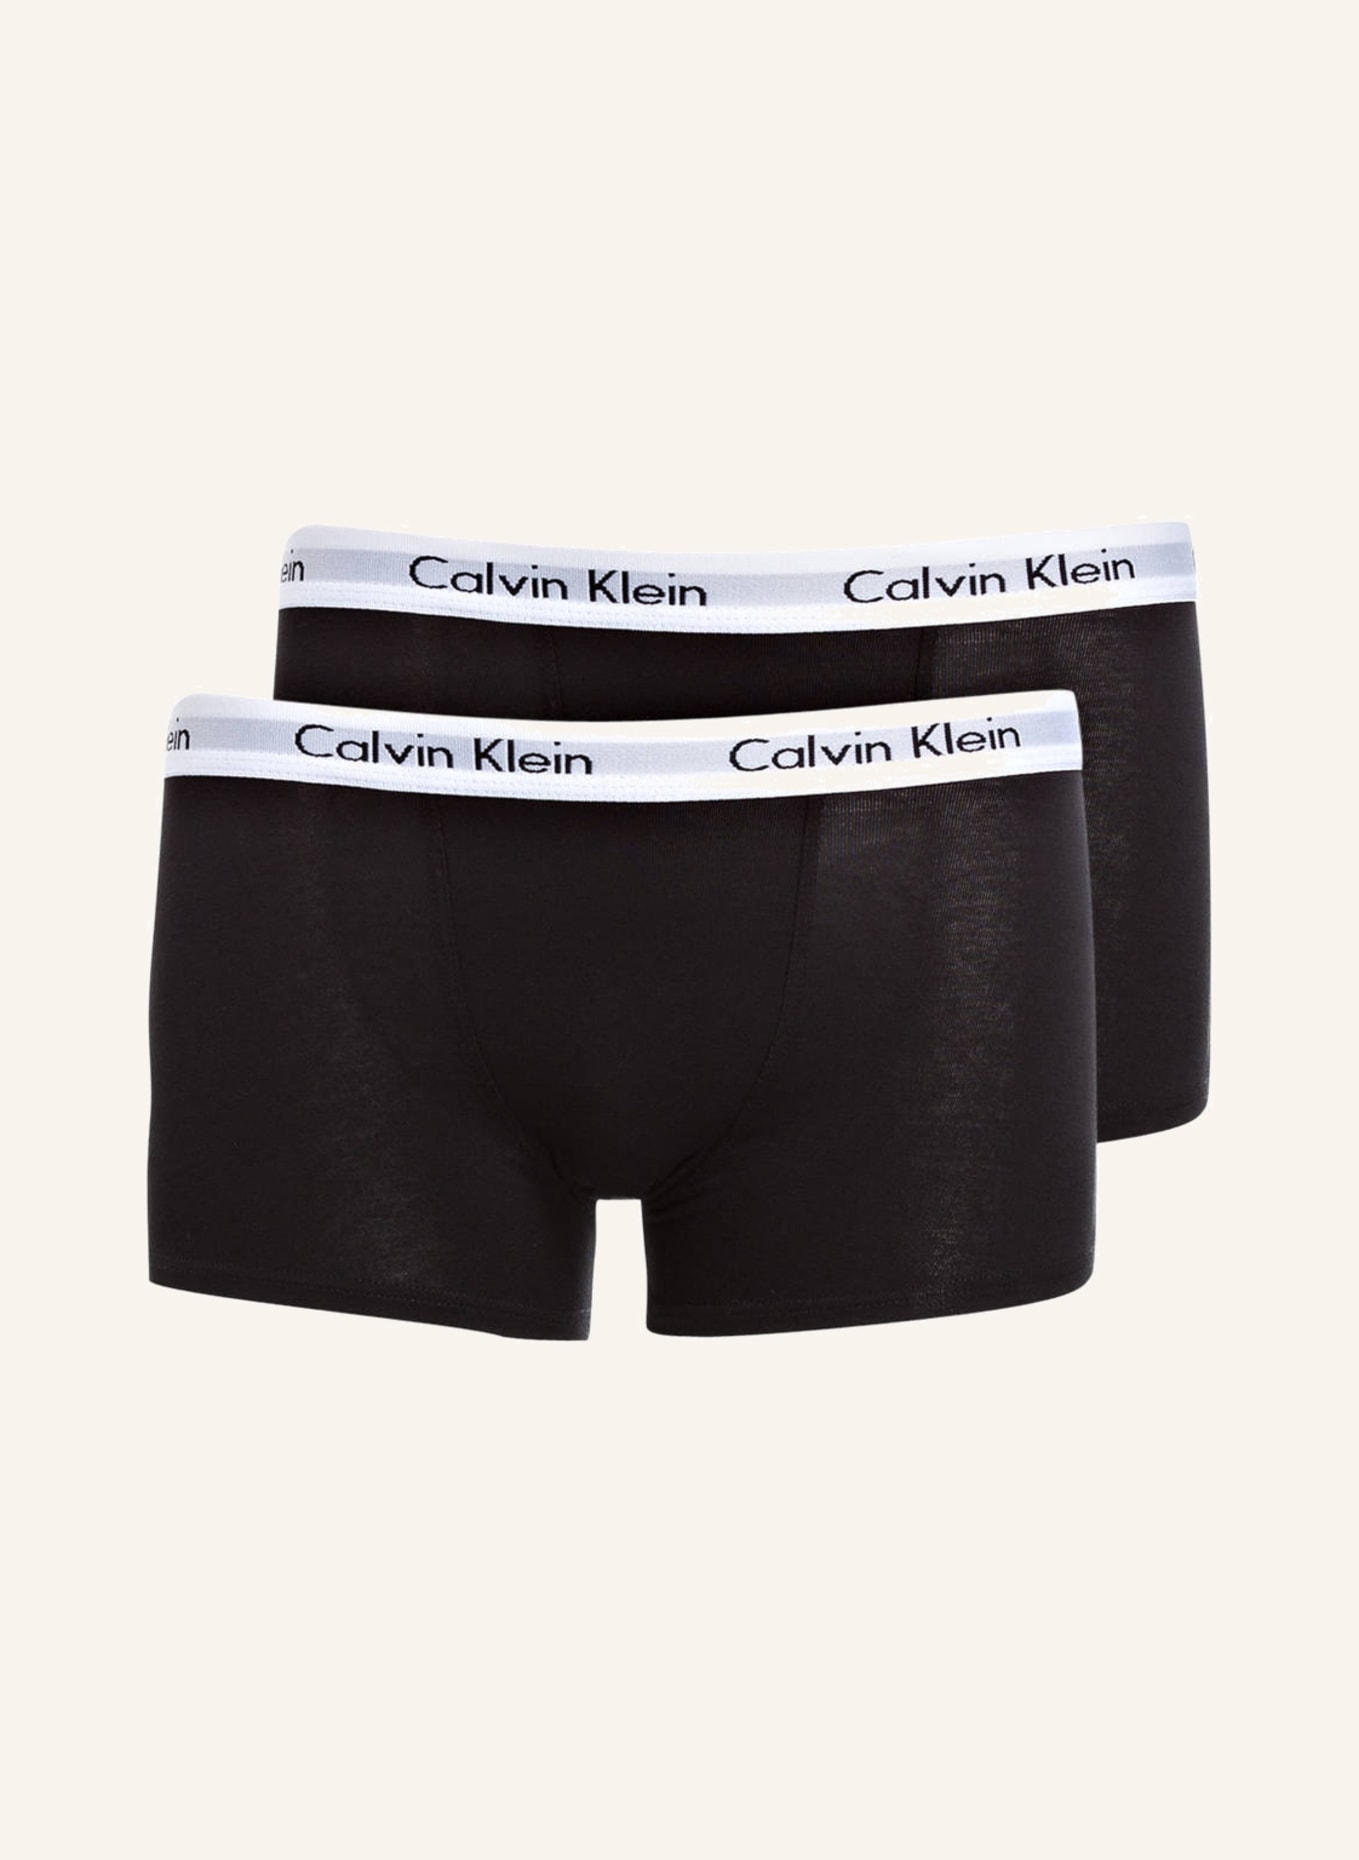 Calvin Klein 2er-Pack Boxershorts MODERN COTTON, Farbe: SCHWARZ (Bild 1)